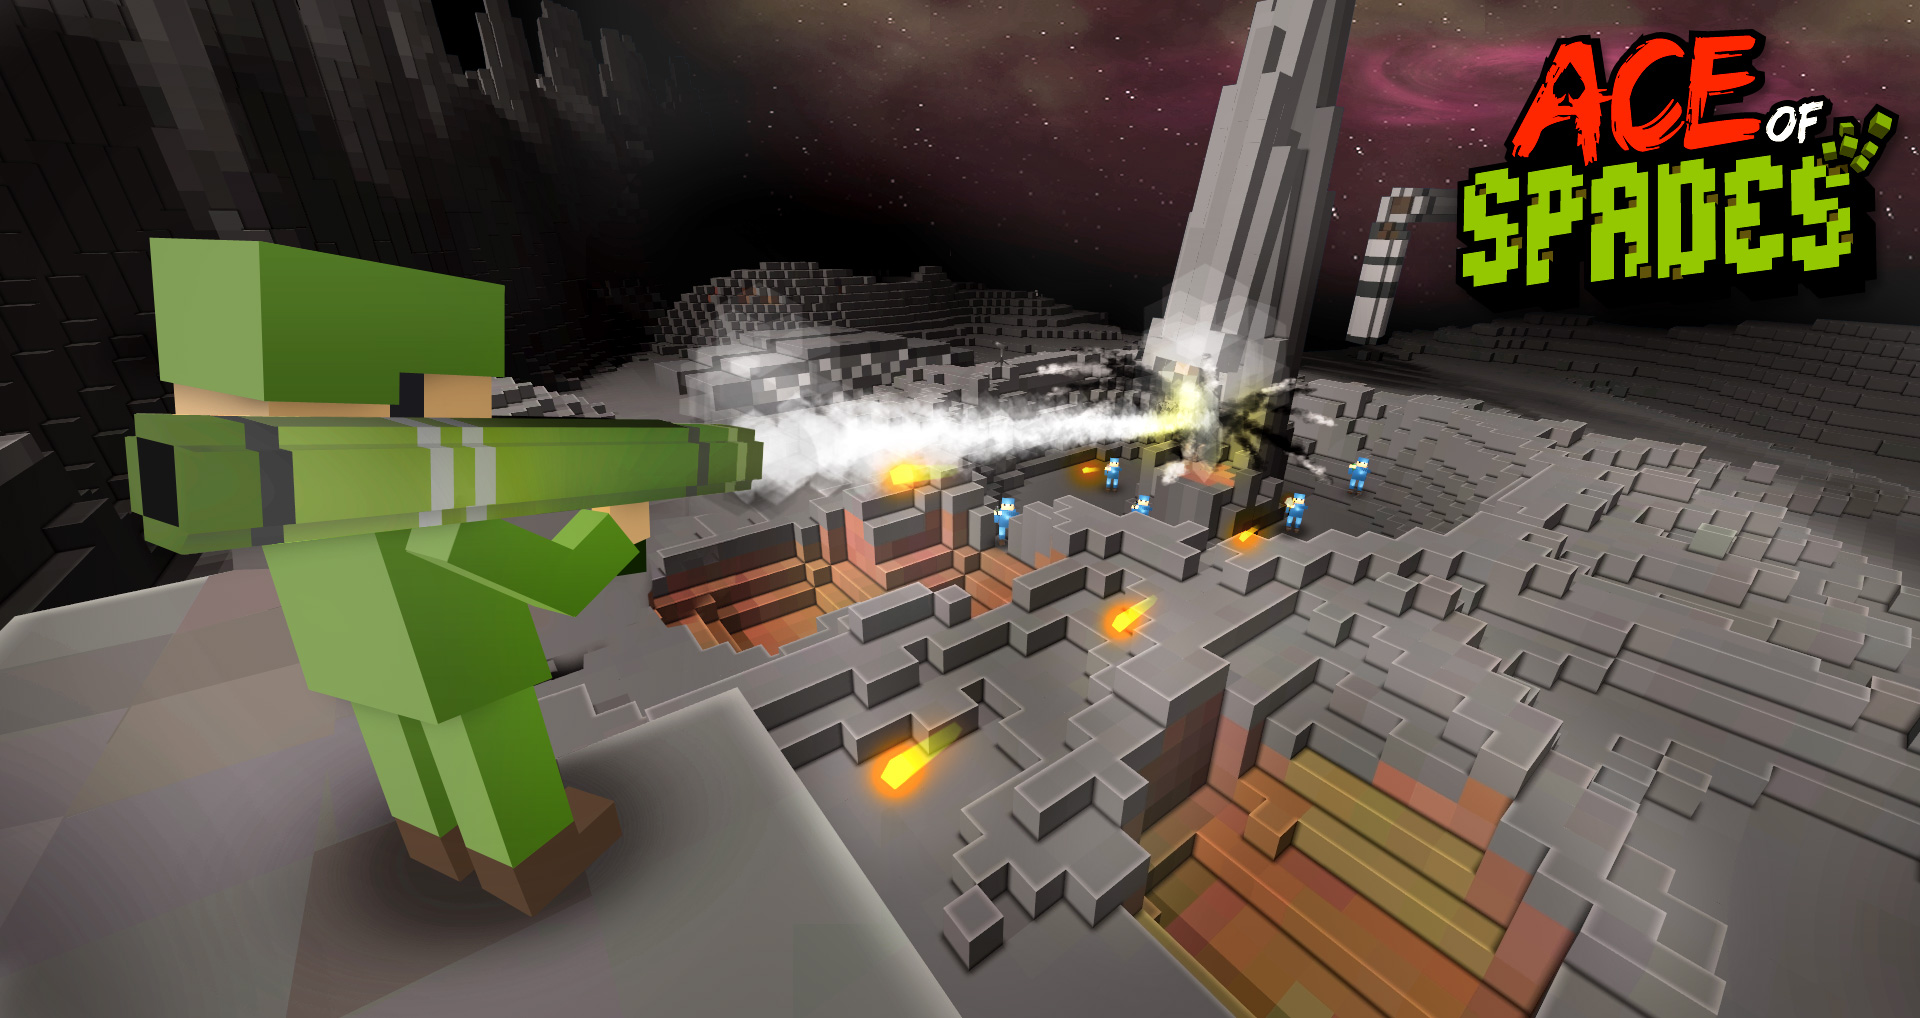 Machine guns meet Minecraft in Ace of Spades